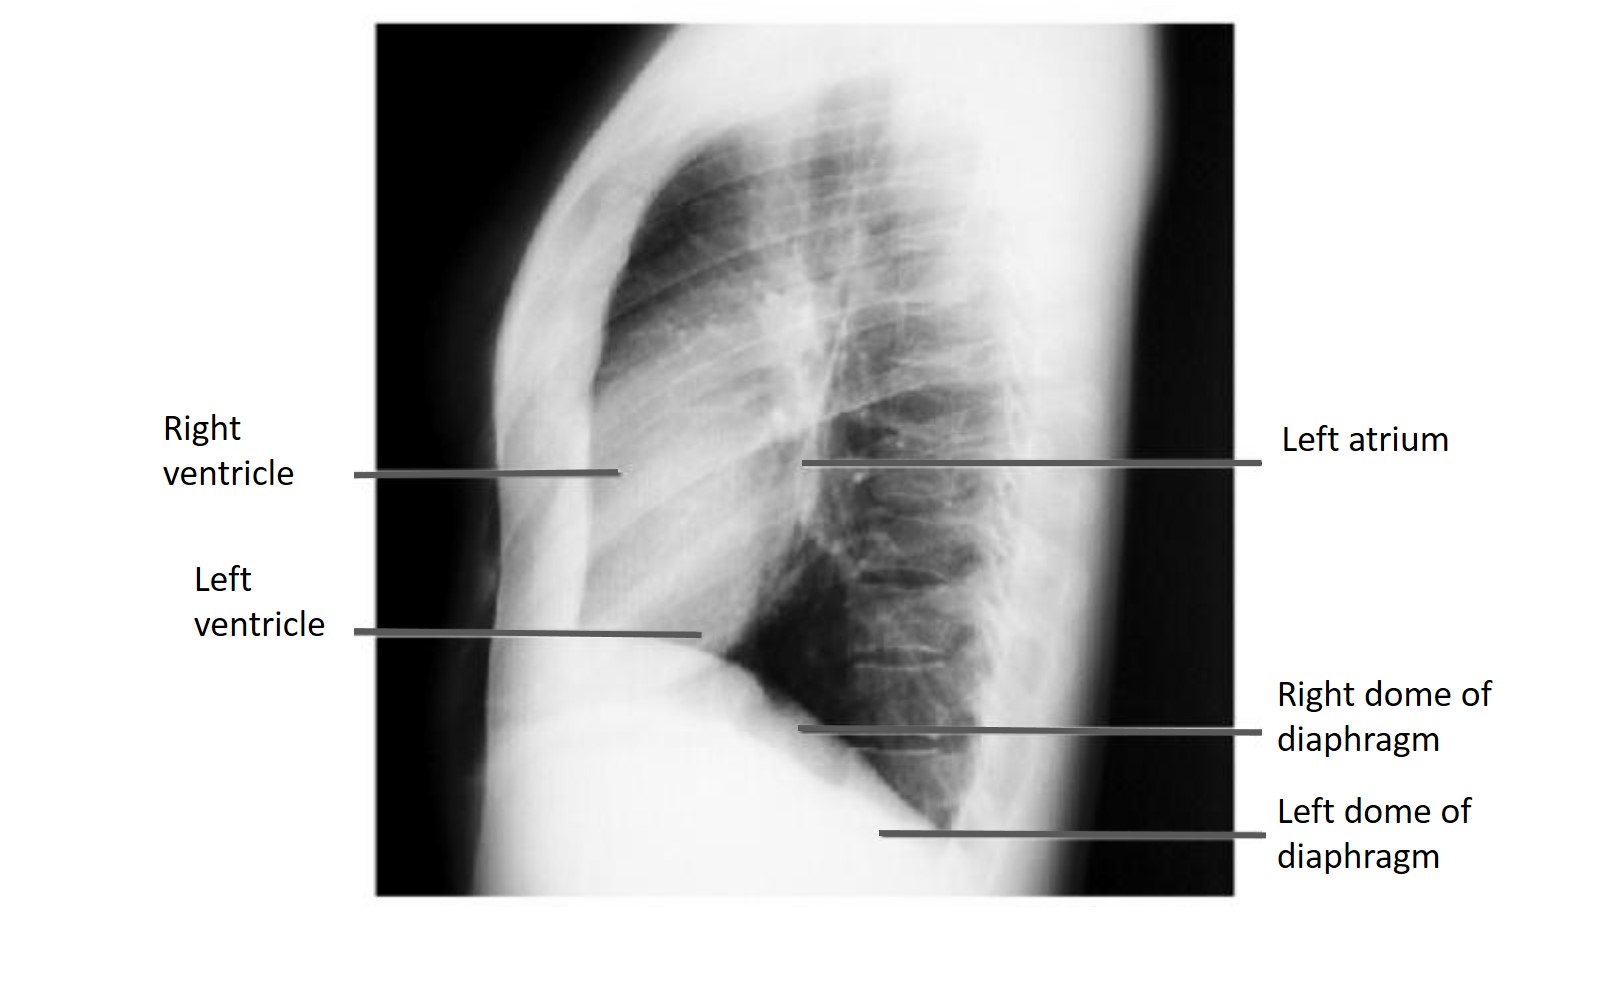 X-ray Heart Borders, X-ray, heart borders, radiological, radiology, heart x-ray, chest x-ray, heart borders on x-ray, determination of heart borders